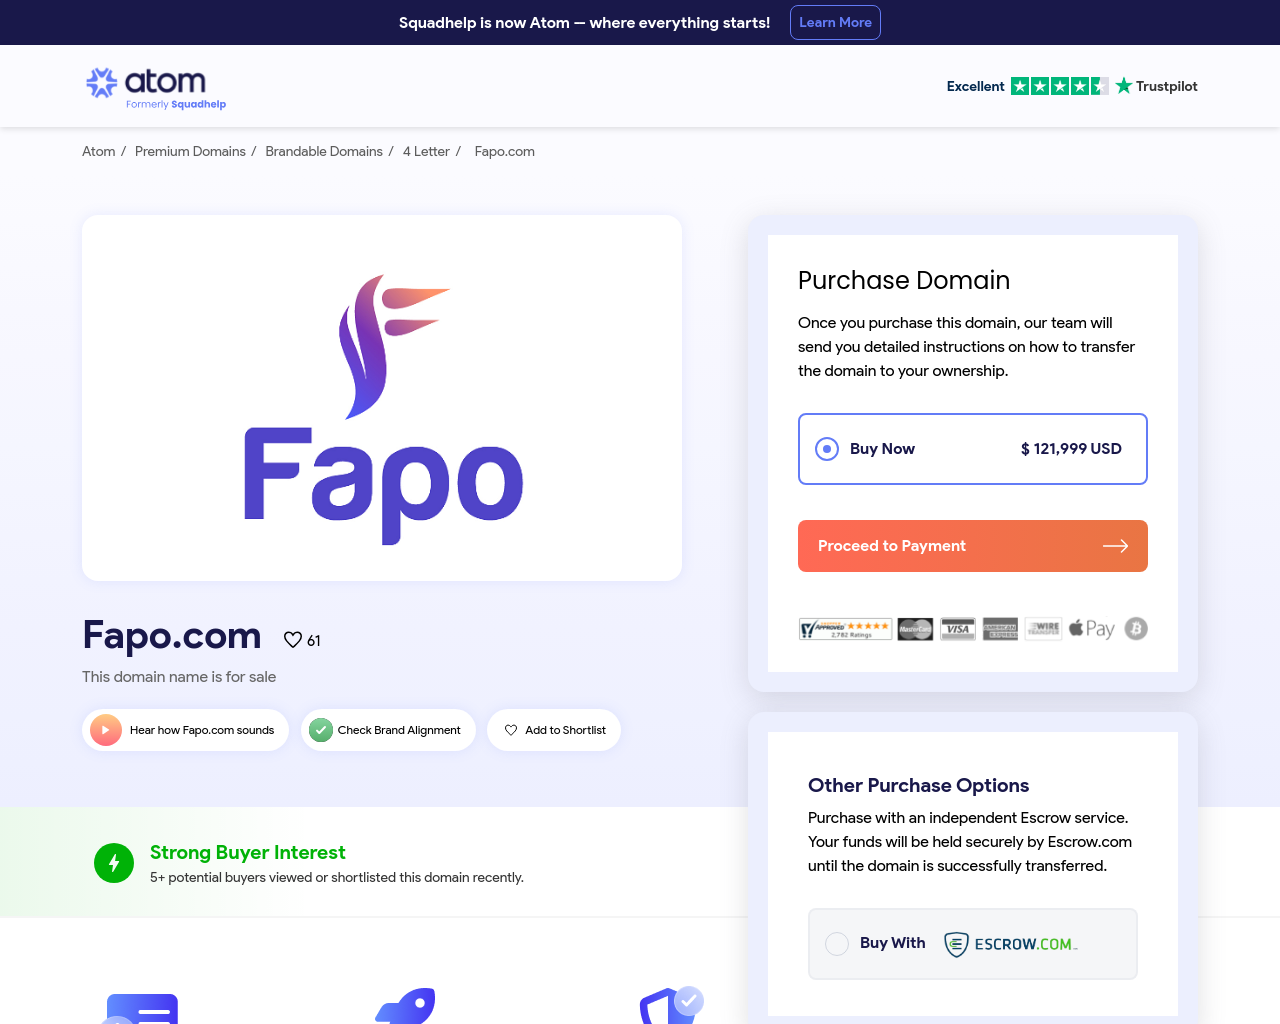 fapo.com